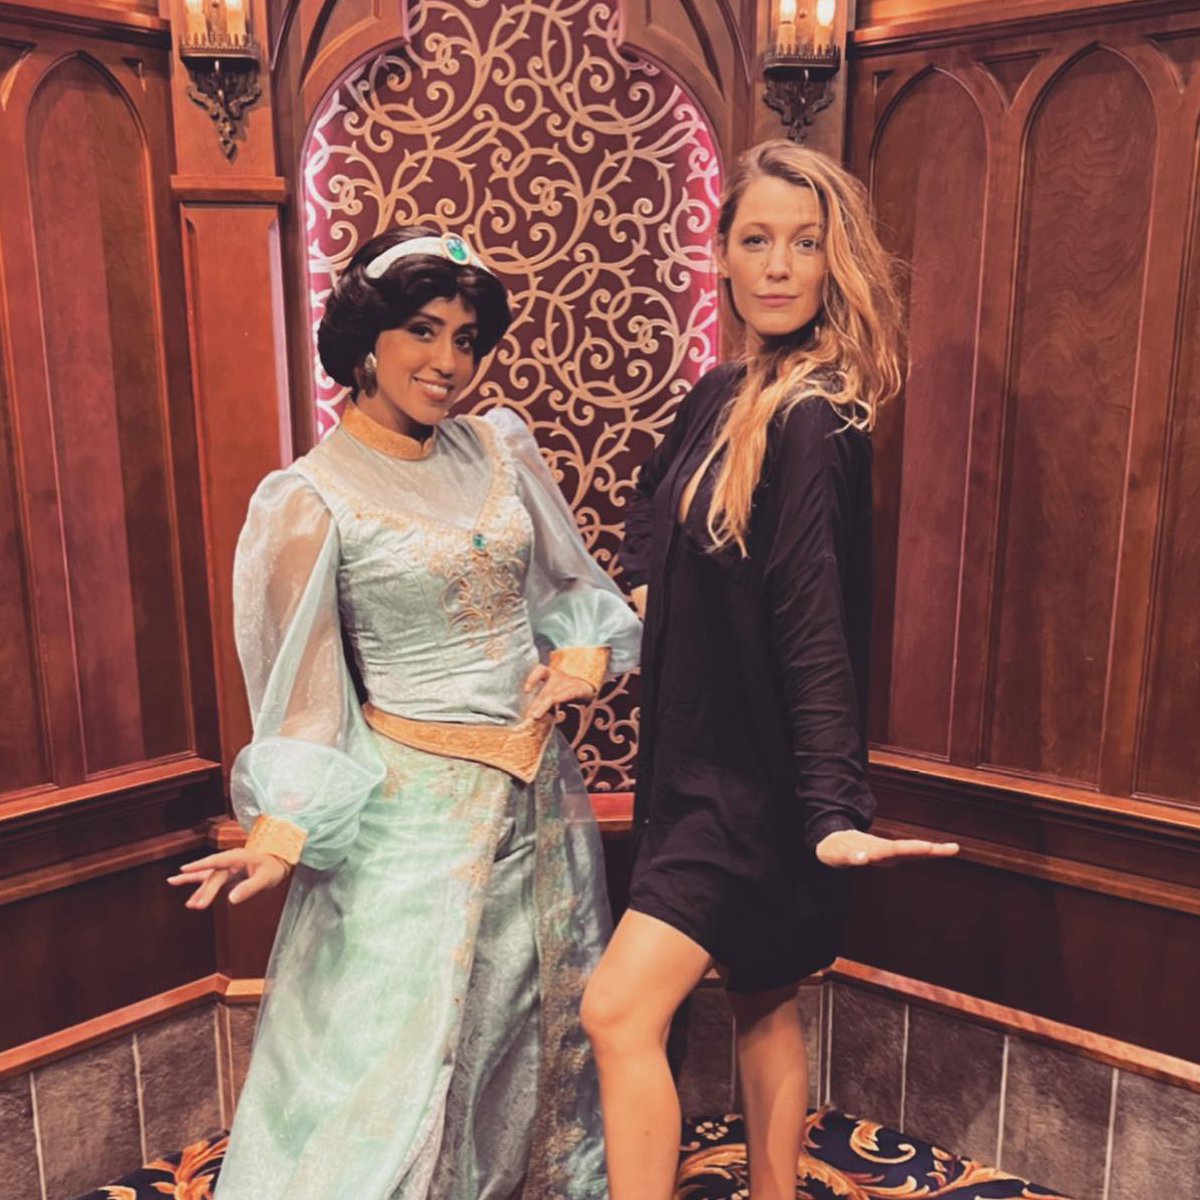 Blake Lively Kicks Off Her Birthday Celebrations Early at Disneyland